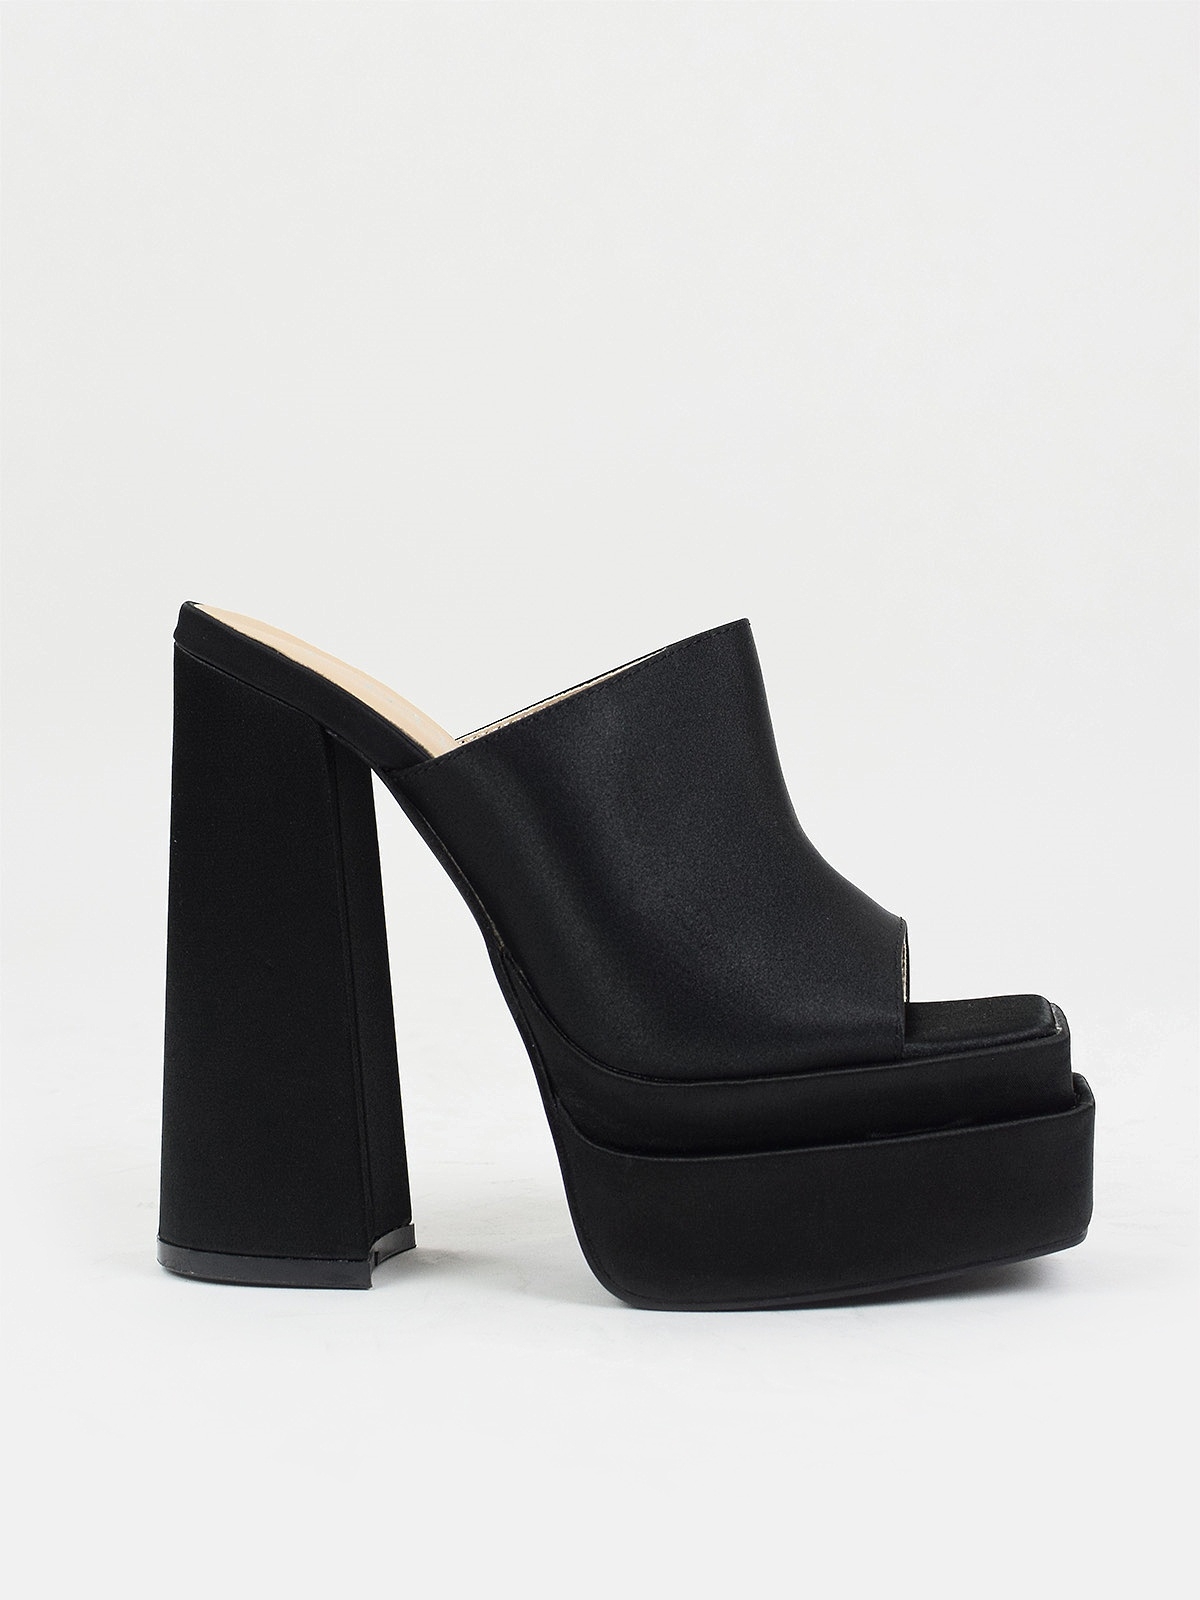 High heeled platform sandals in black